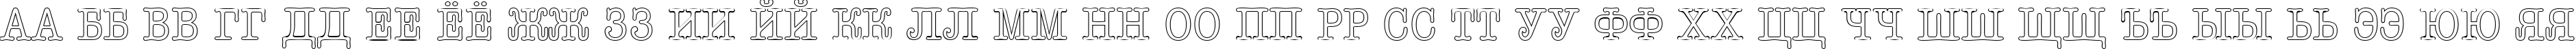 Пример написания русского алфавита шрифтом a_OldTyperTitulNrOtl